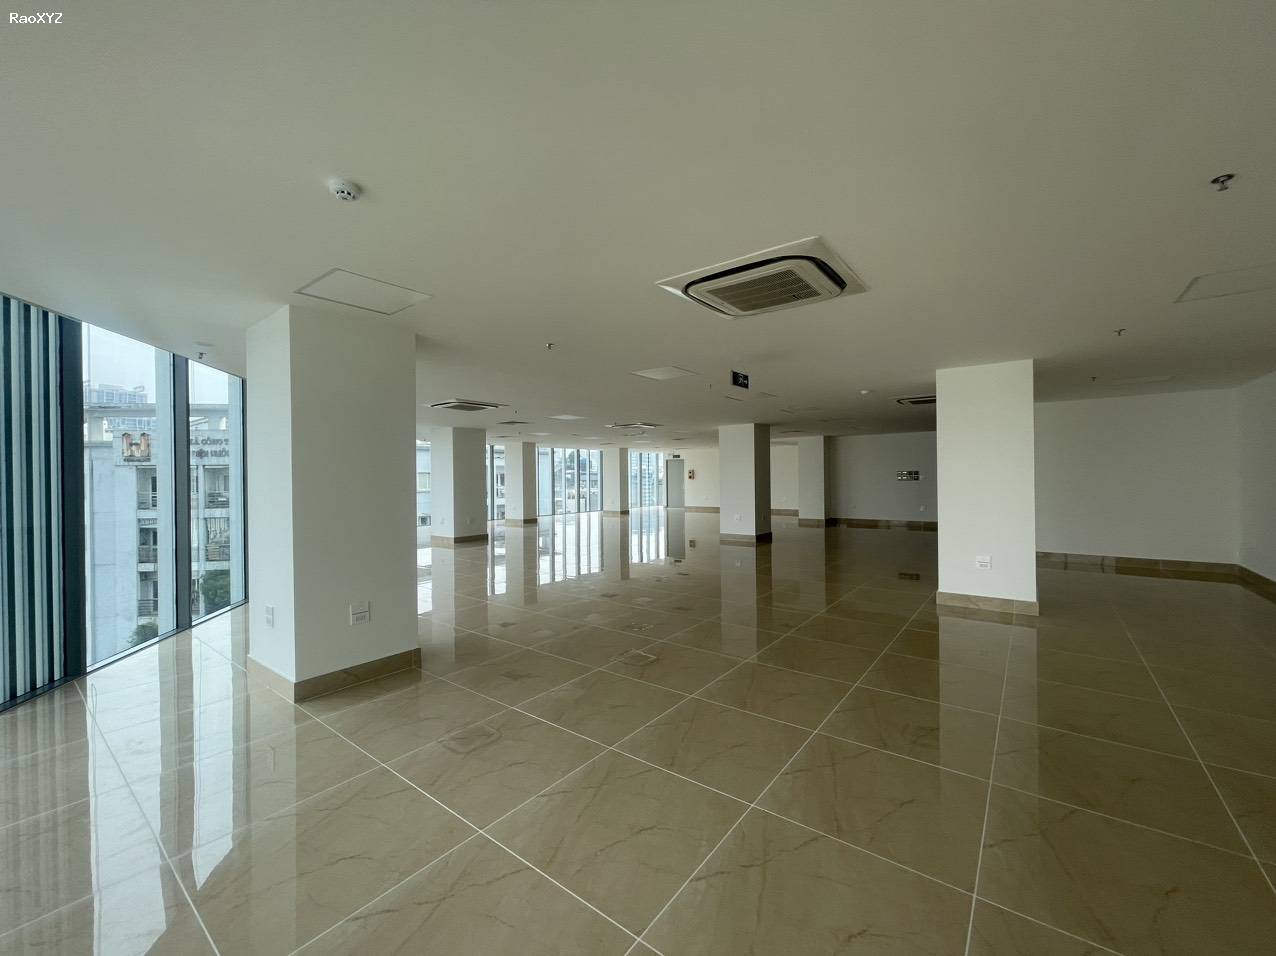 Siêu hót cho thuê nhà mặt phố mới toanh lô góc 24m, Trần Thái Tông, DTSD 3000m2 gồm 10 tầng